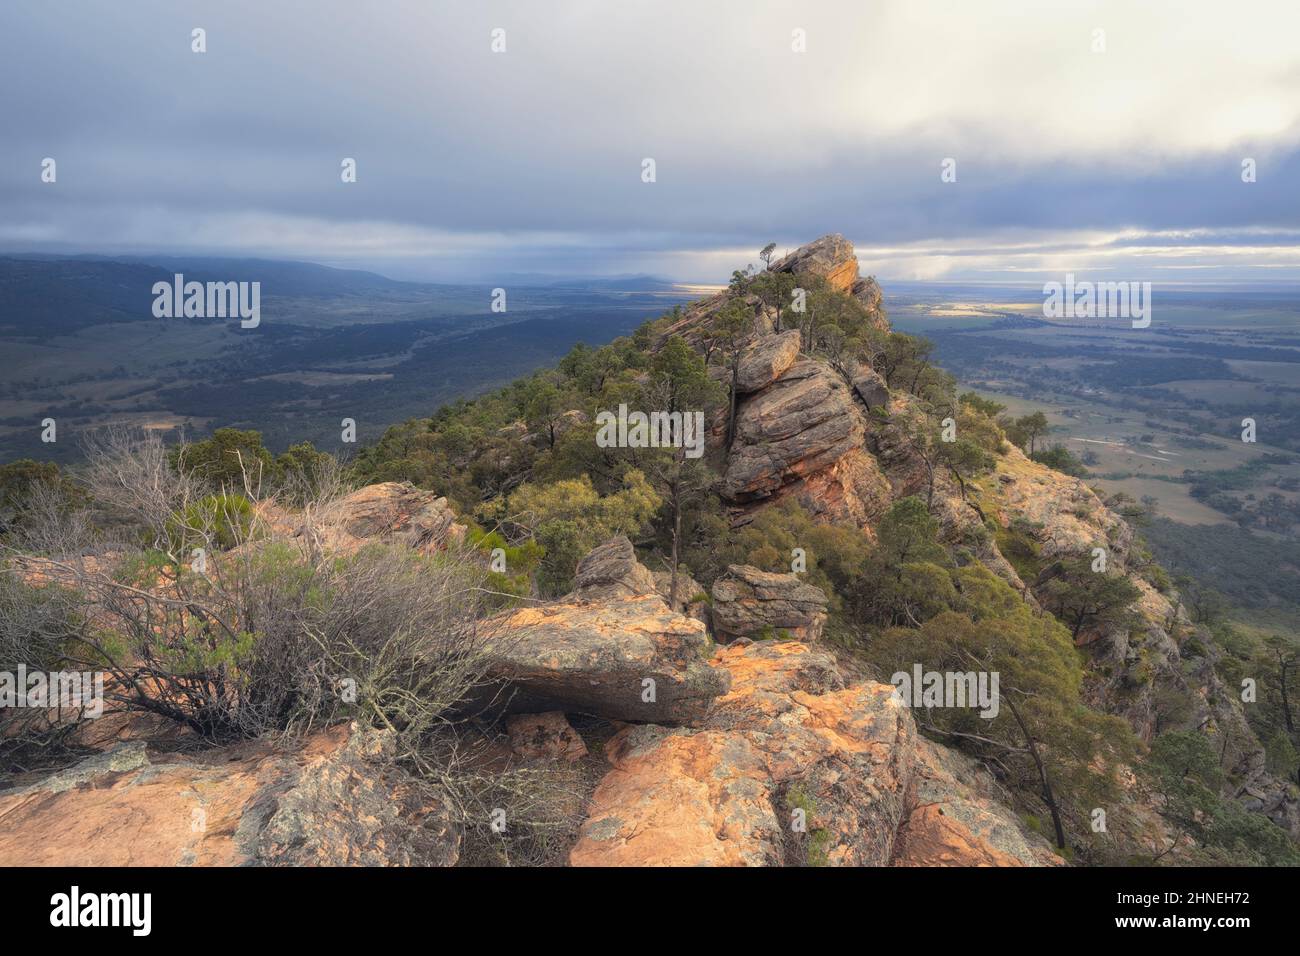 Felsiger Quarzit-Aufschluss und Sturmwolken über der ländlichen Landschaft, Südaustralien, Australien Stockfoto